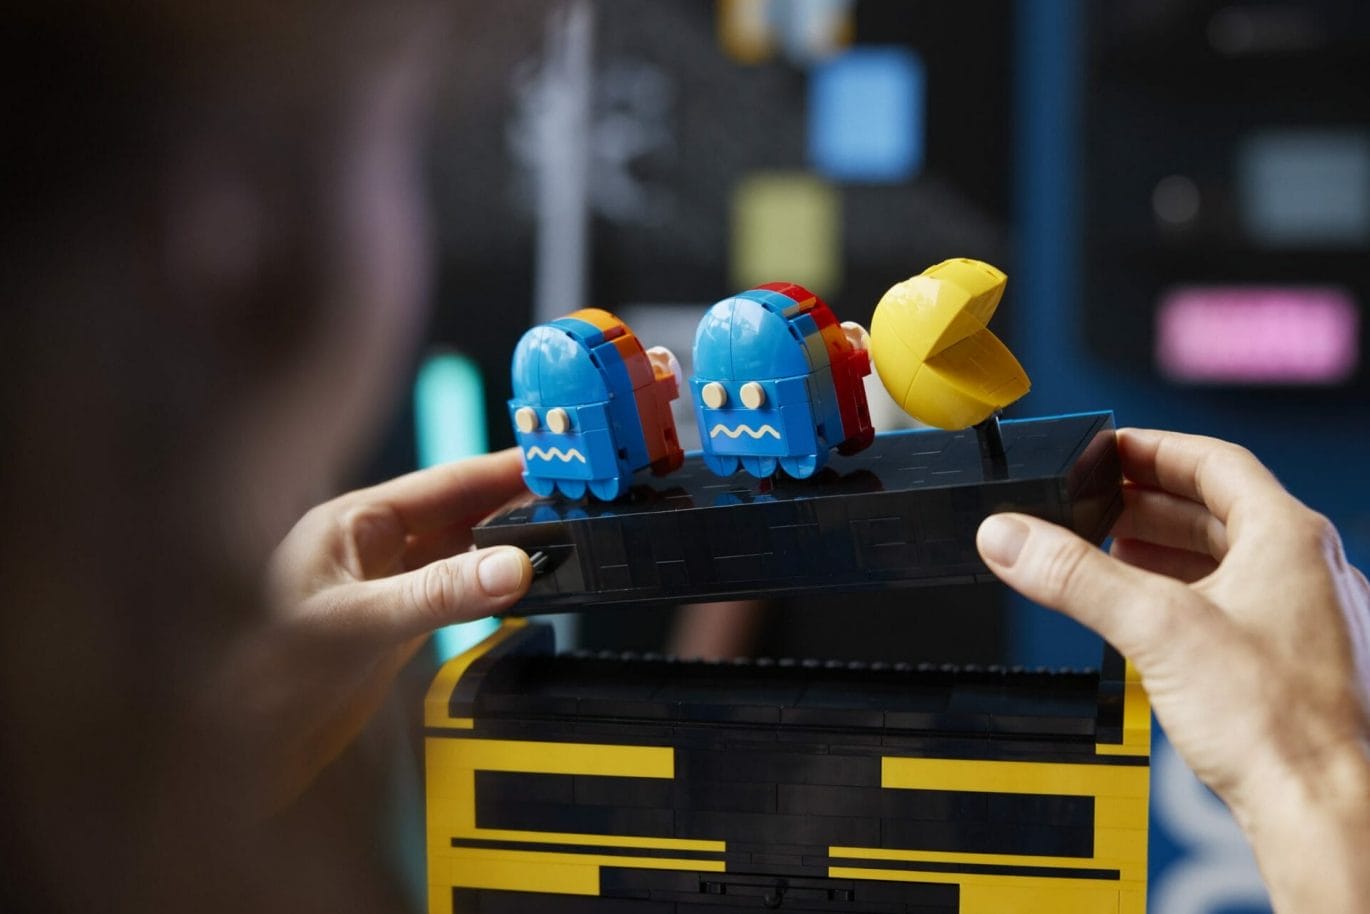 LEGO viert de verjaardag van PAC-MAN met nieuwe set